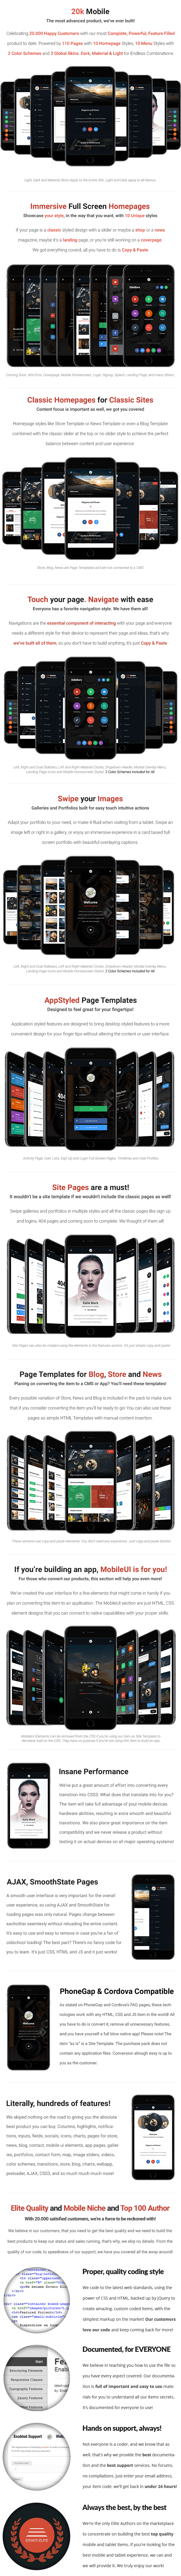 20k Mobile | PhoneGap & Cordova Mobile App - 10